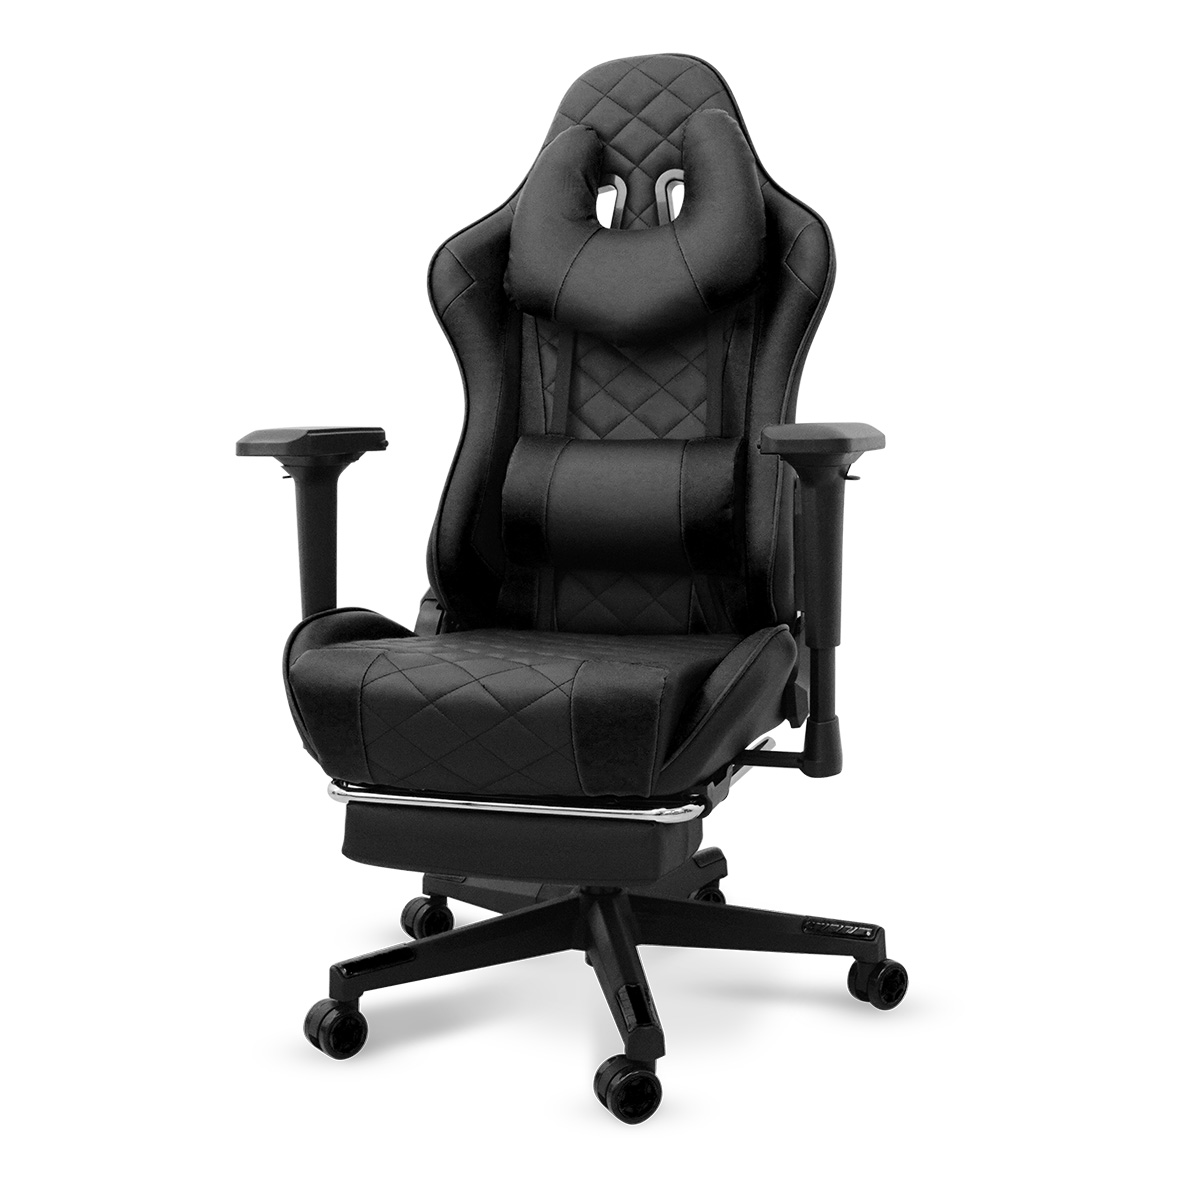 ゲーミングチェア オフィスチェア リクライニング キャスター付 合皮レザー 高さ調節可能 椅子 疲れにくい ヘッドレスト フットレスト デスクチェア  座面広々